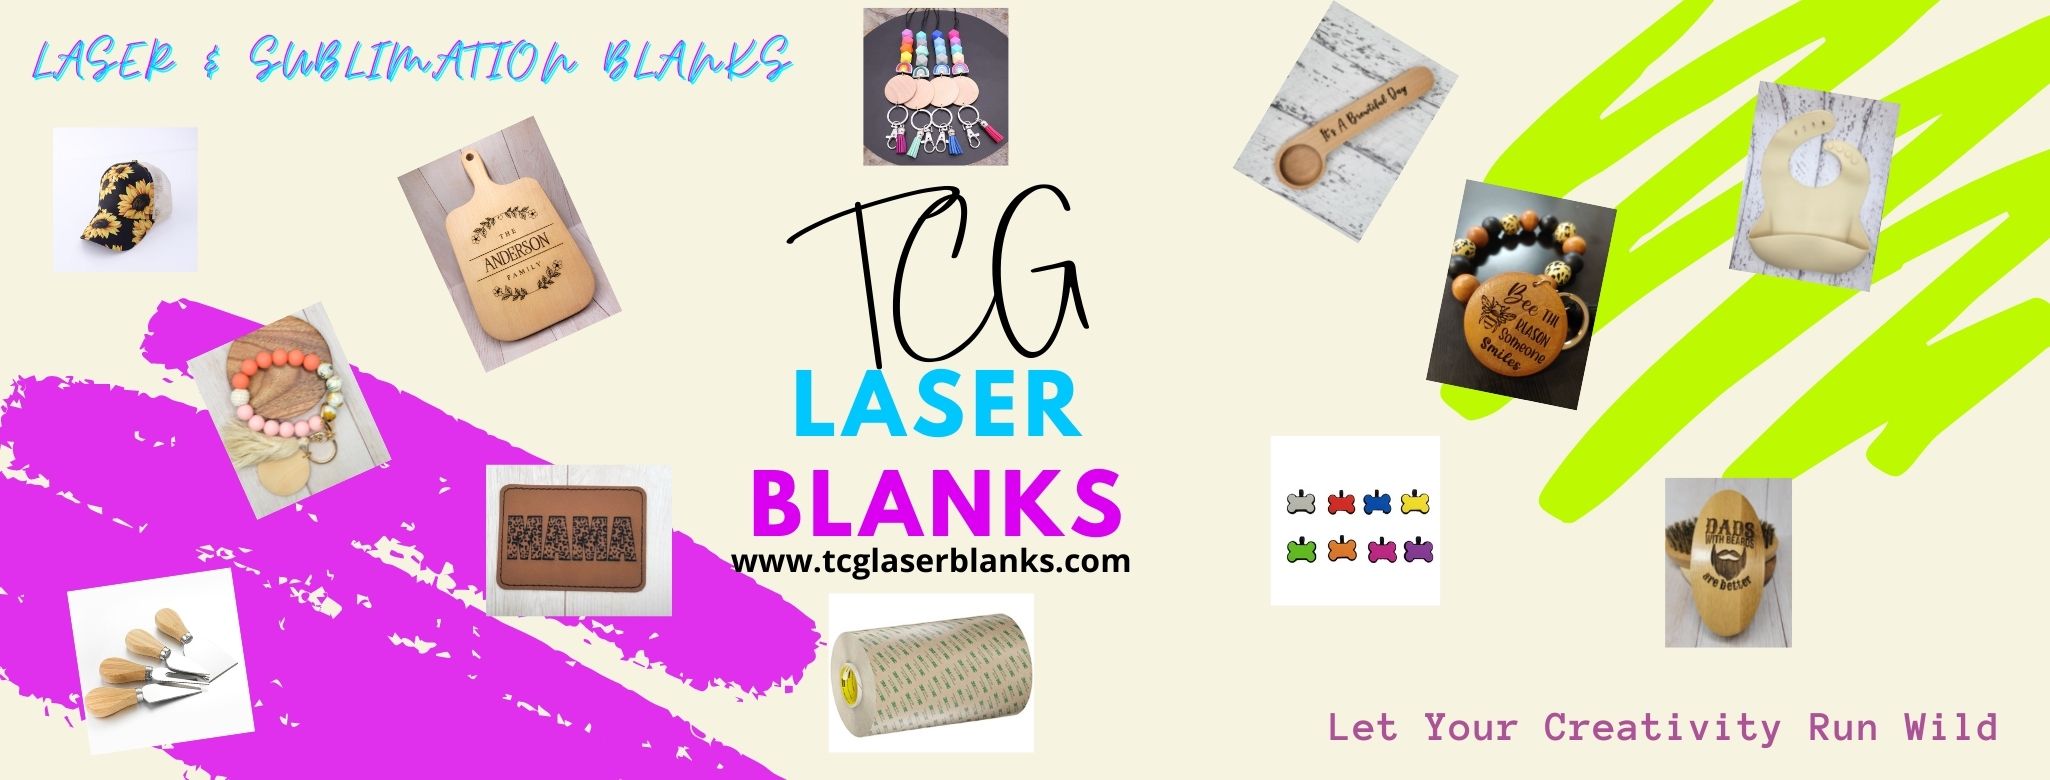 TCG Laser Blanks